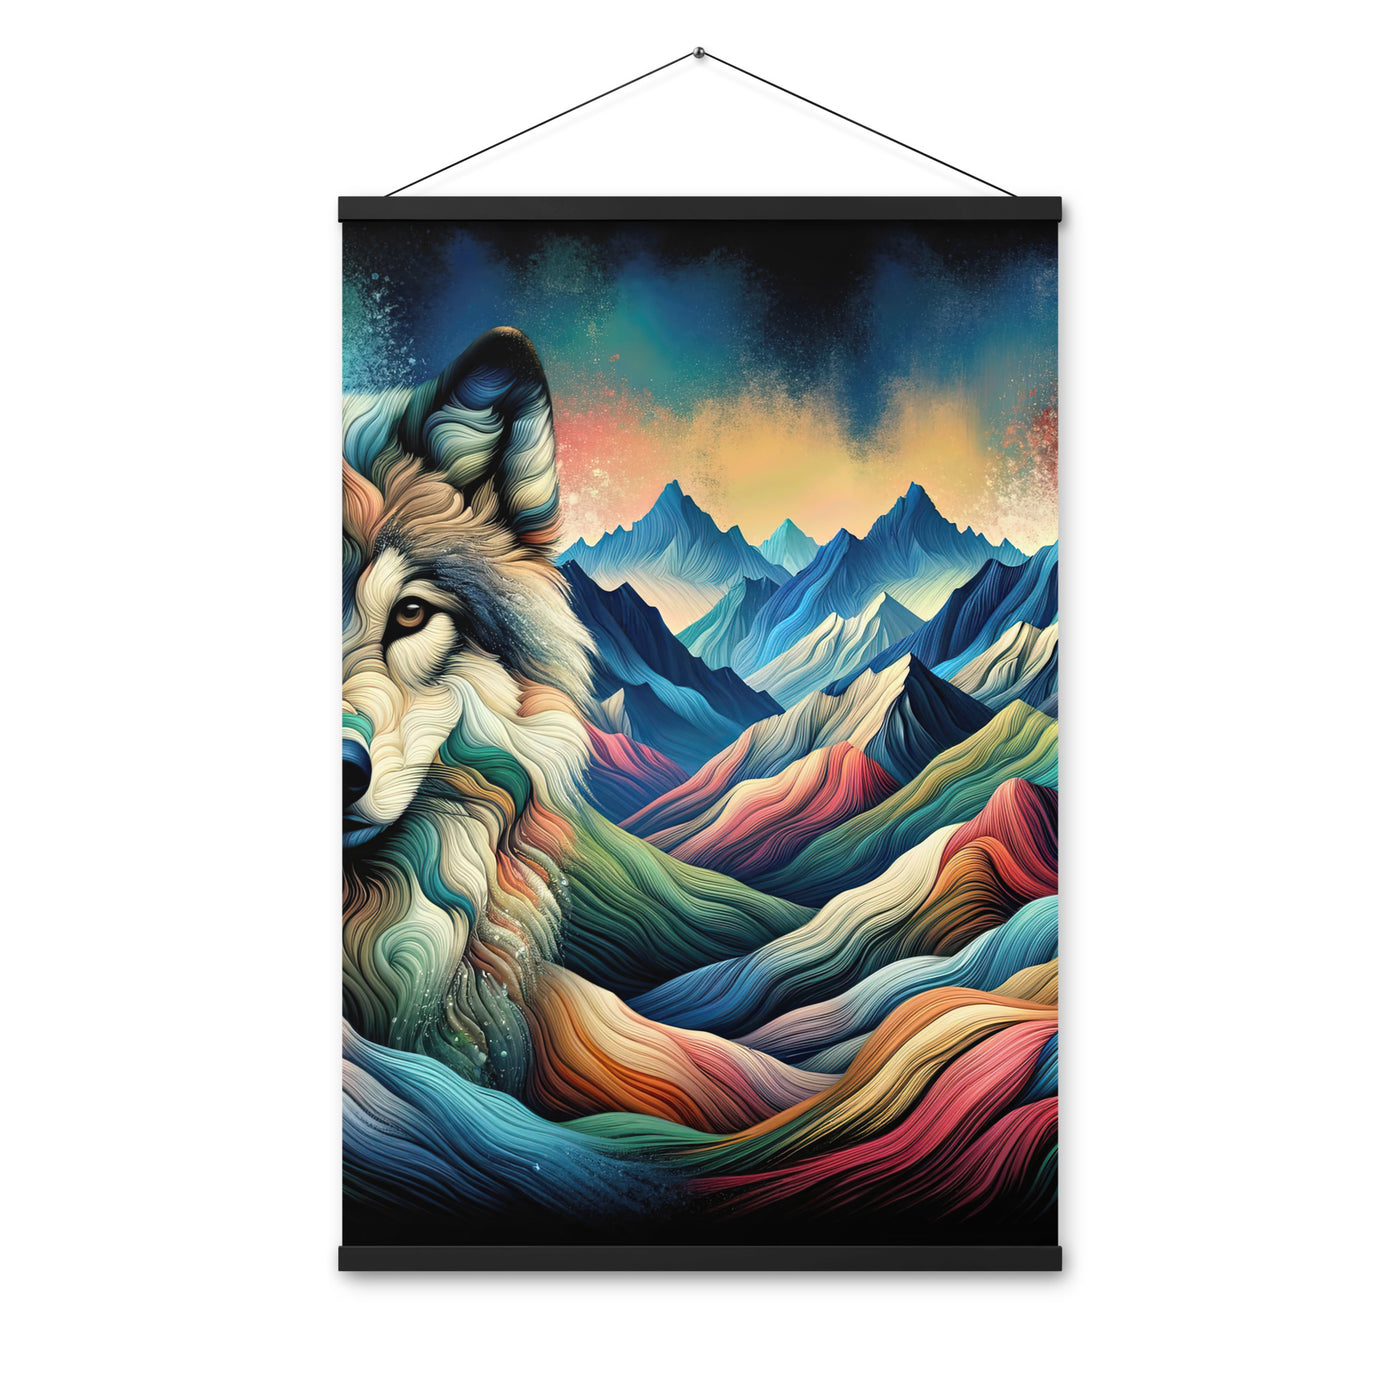 Traumhaftes Alpenpanorama mit Wolf in wechselnden Farben und Mustern (AN) - Premium Poster mit Aufhängung xxx yyy zzz 61 x 91.4 cm